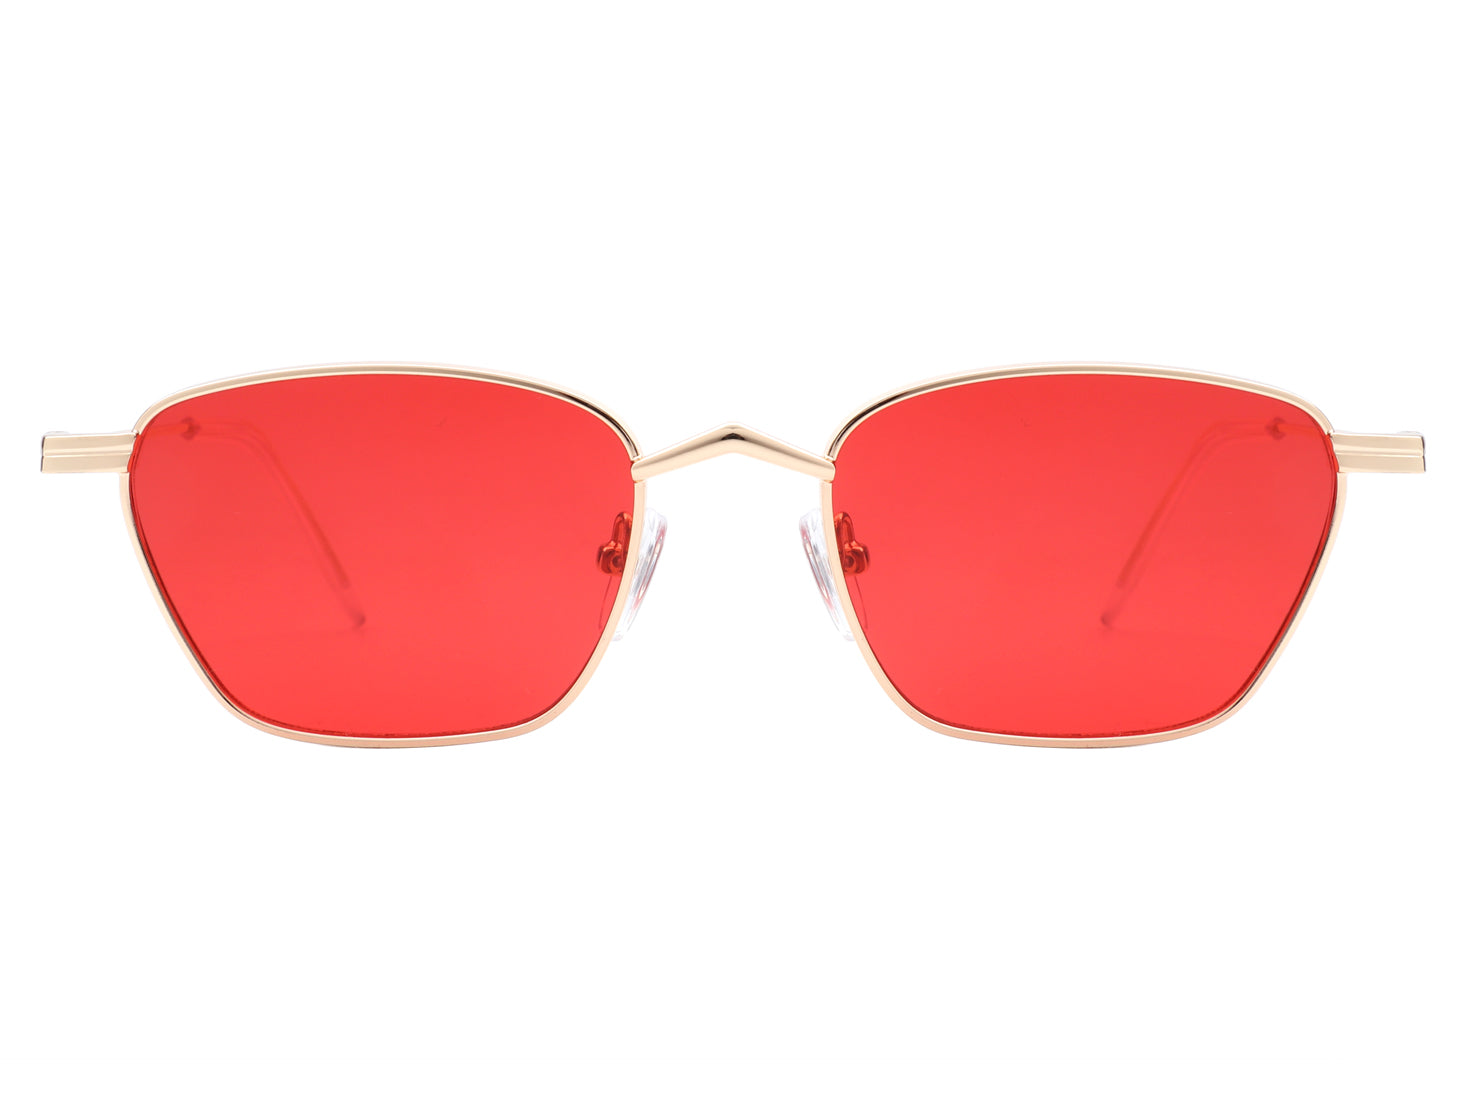 Sunglasses: Square Sunglasses, acetate & calfskin — Fashion